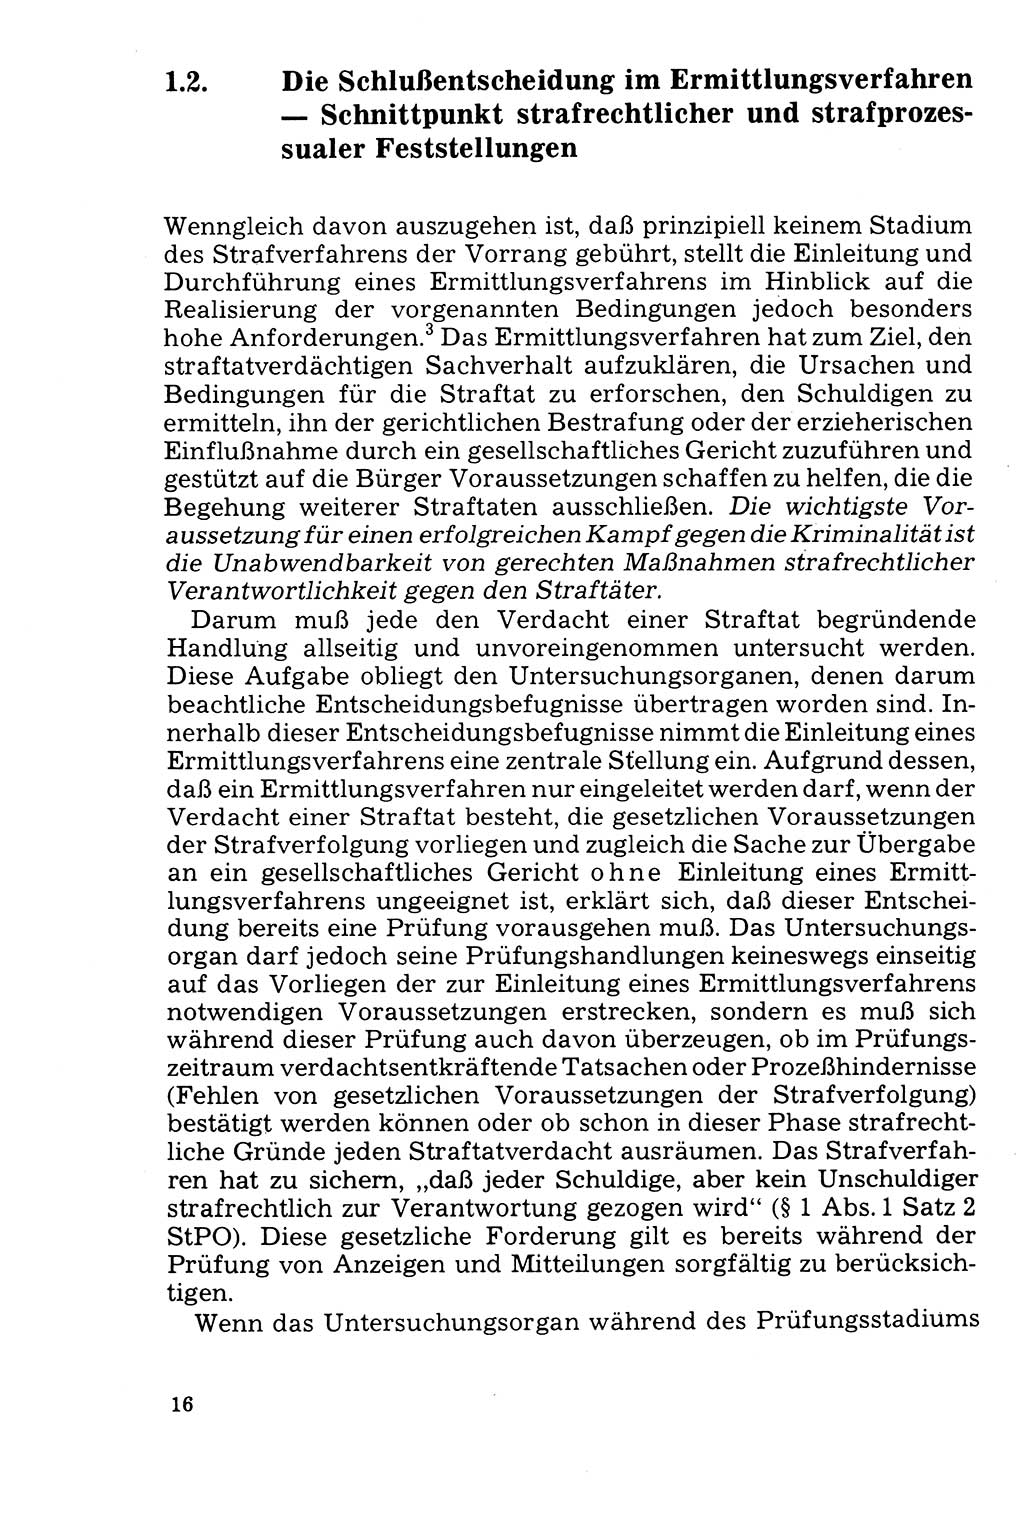 Der Abschluß des Ermittlungsverfahrens [Deutsche Demokratische Republik (DDR)] 1978, Seite 16 (Abschl. EV DDR 1978, S. 16)